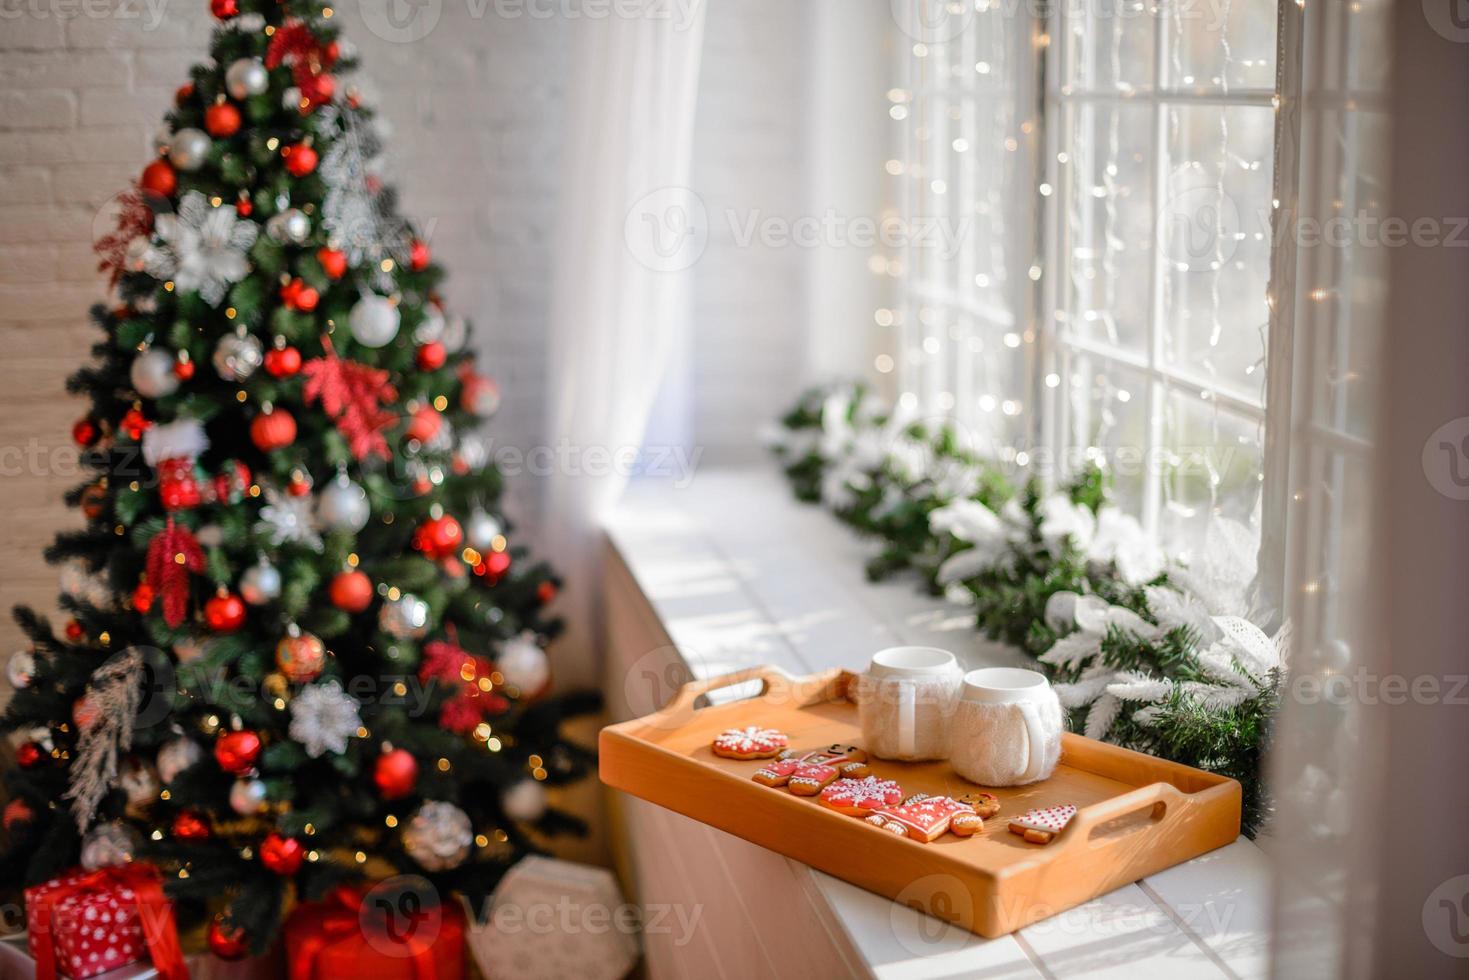 prachtig kerstfeestelijk interieur in een landhuis op kerstavond foto